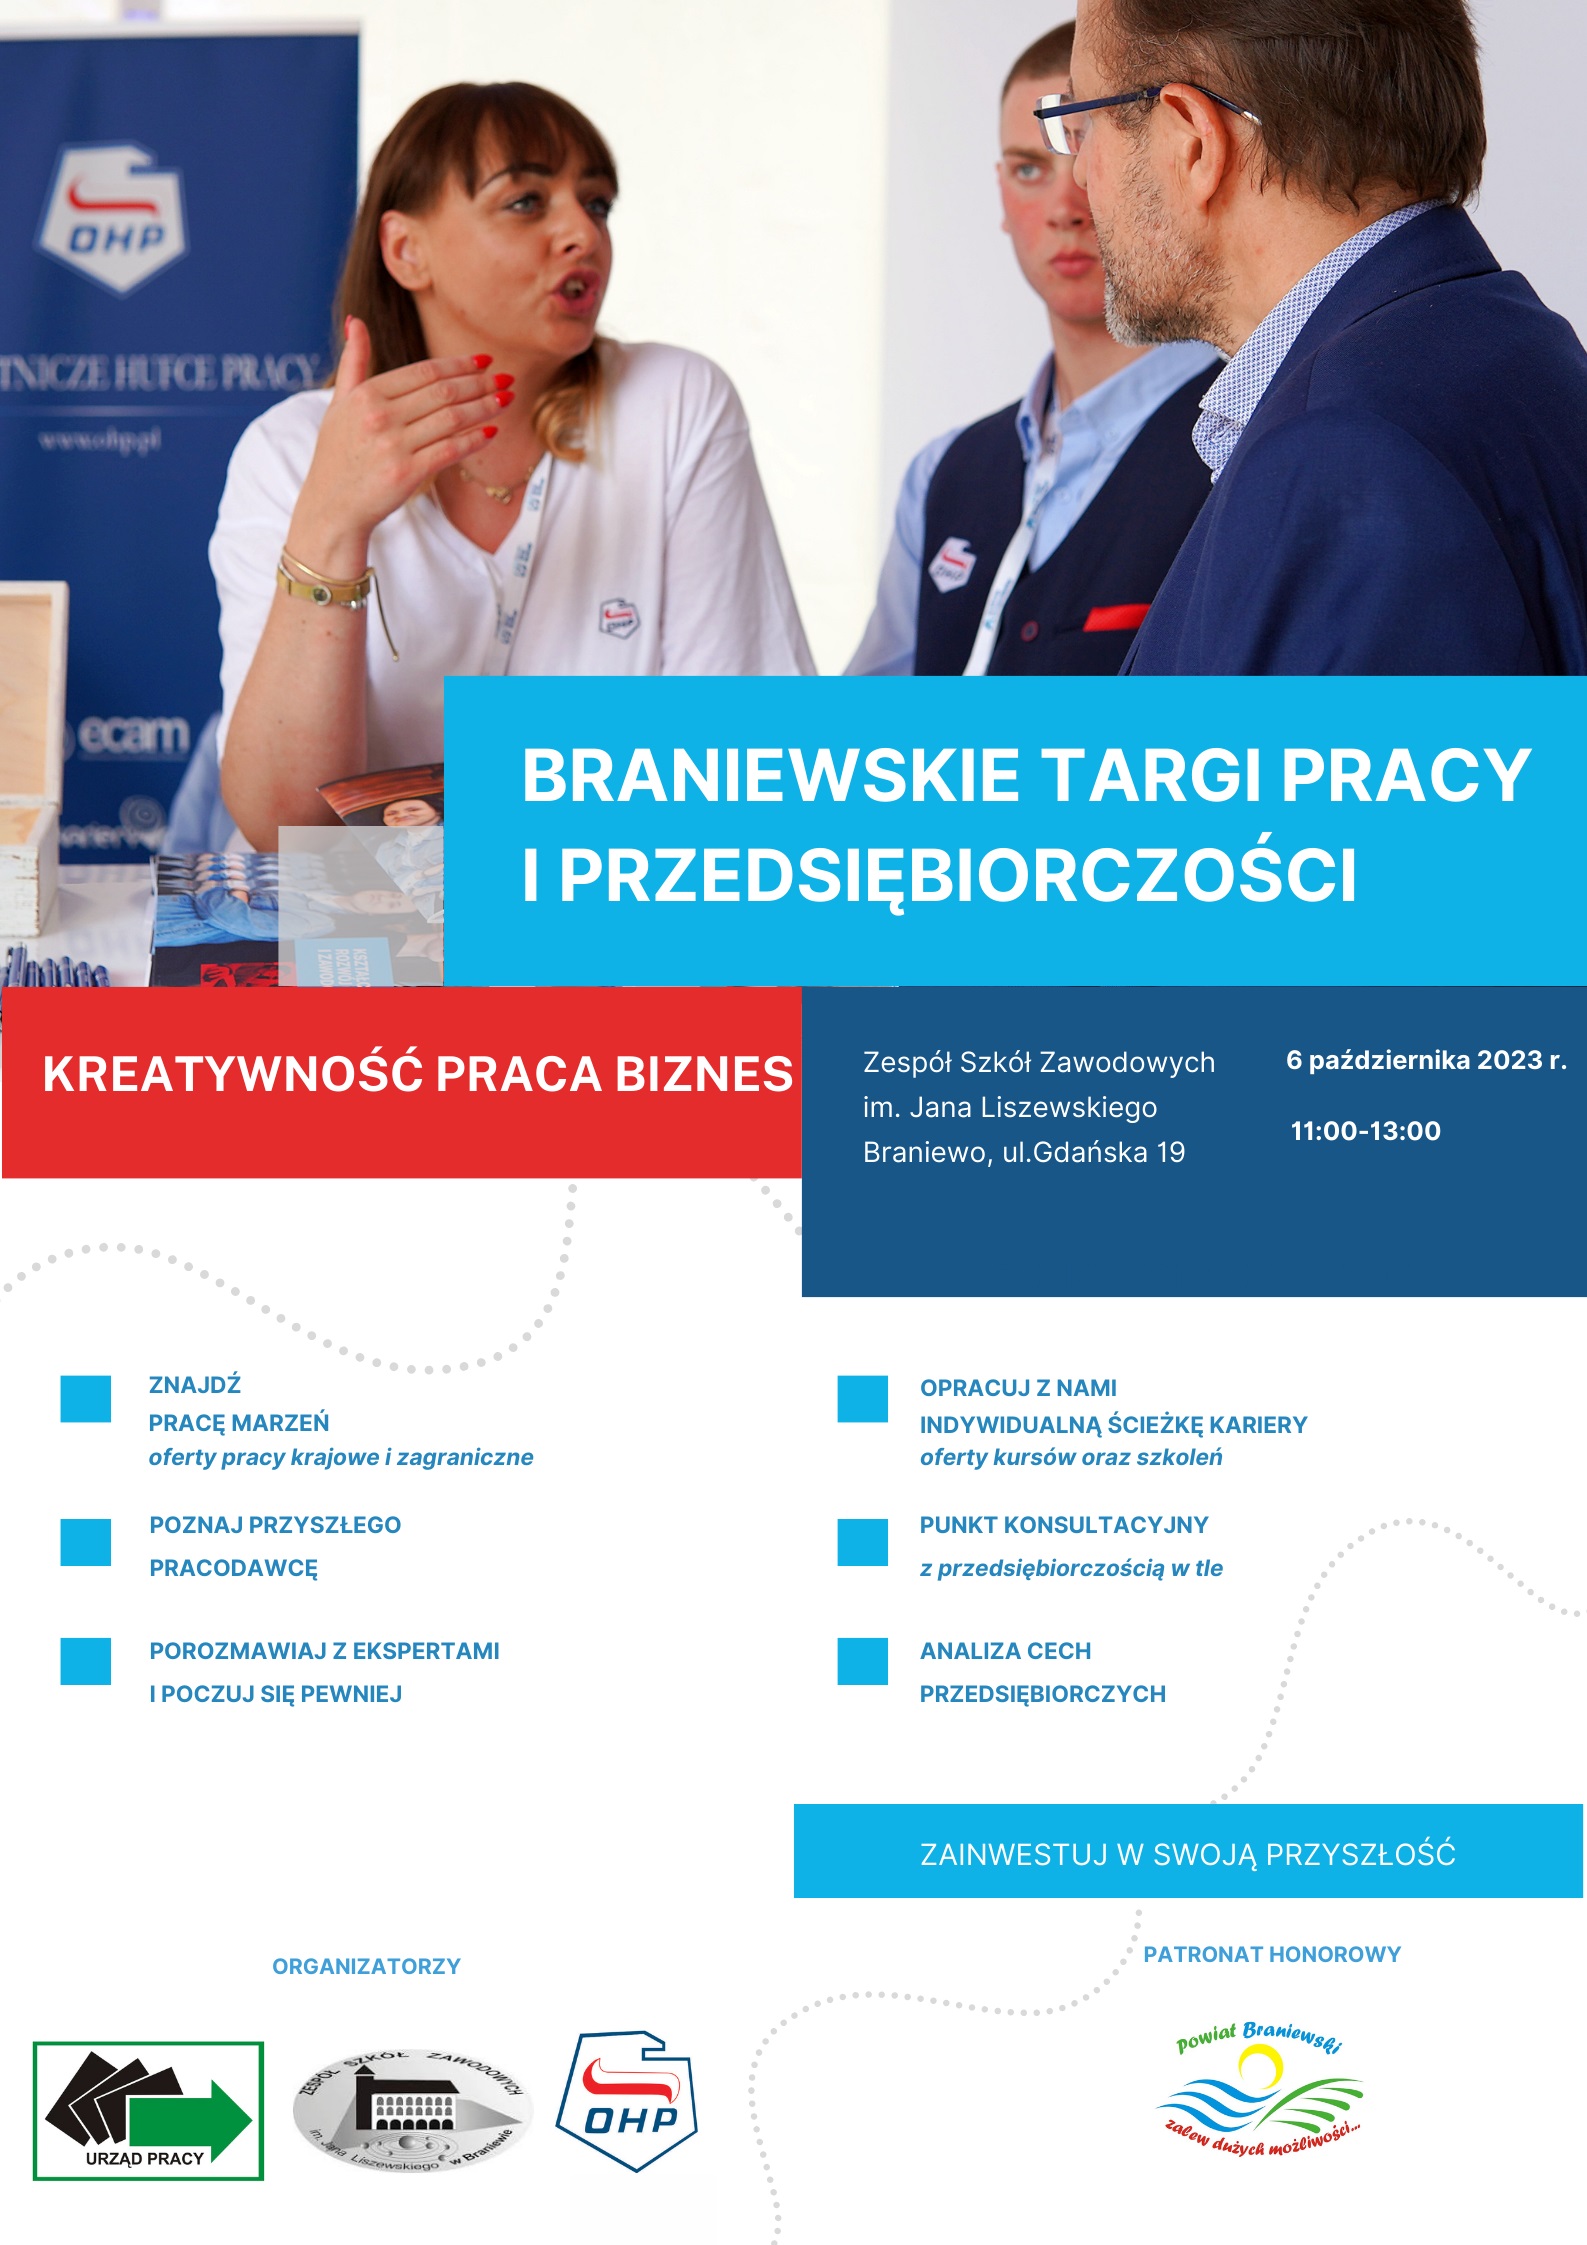 Powiatowy Urząd Pracy w Braniewie zaprasza do udziału  w Braniewskich Targach Pracy i Przedsiębiorczości pod nazwą „Kreatywność, praca, biznes” - plakat